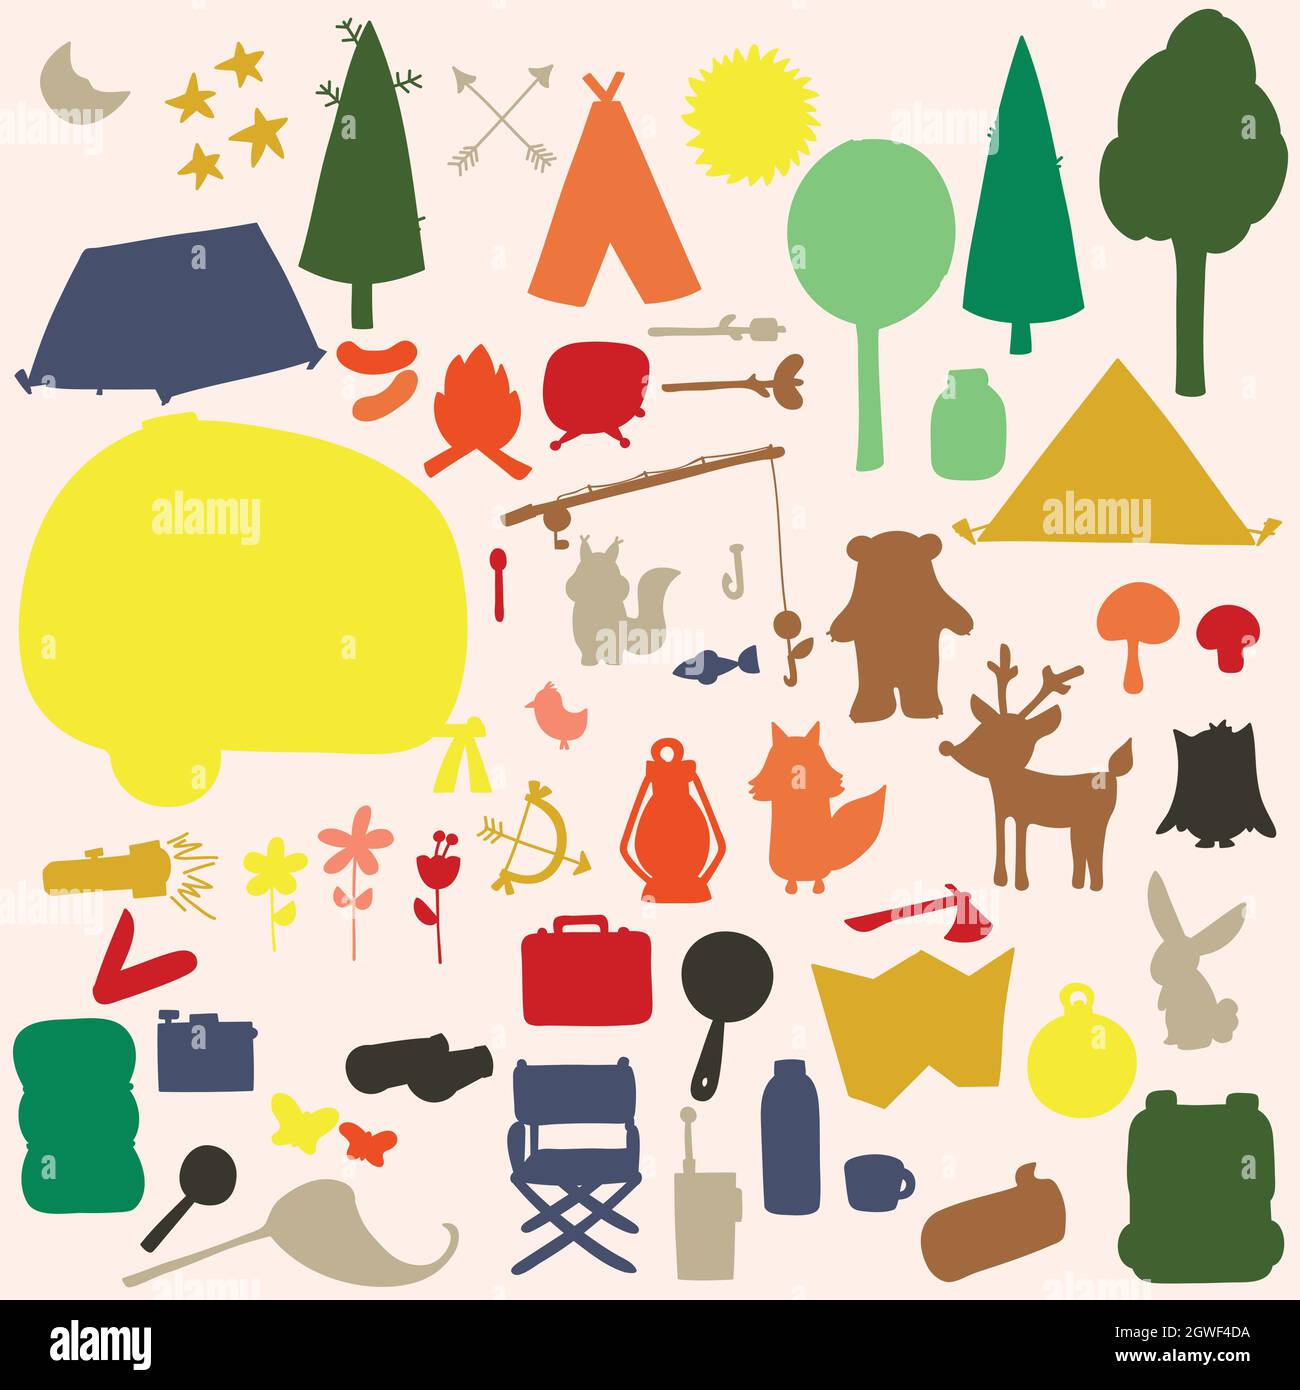 Campingausflug. Handgezogener Anhänger, Zelte, Angeln, Lagerfeuer, Natur, Tiere. Wald im Freien. Farbige Silhouette. Stock Vektor